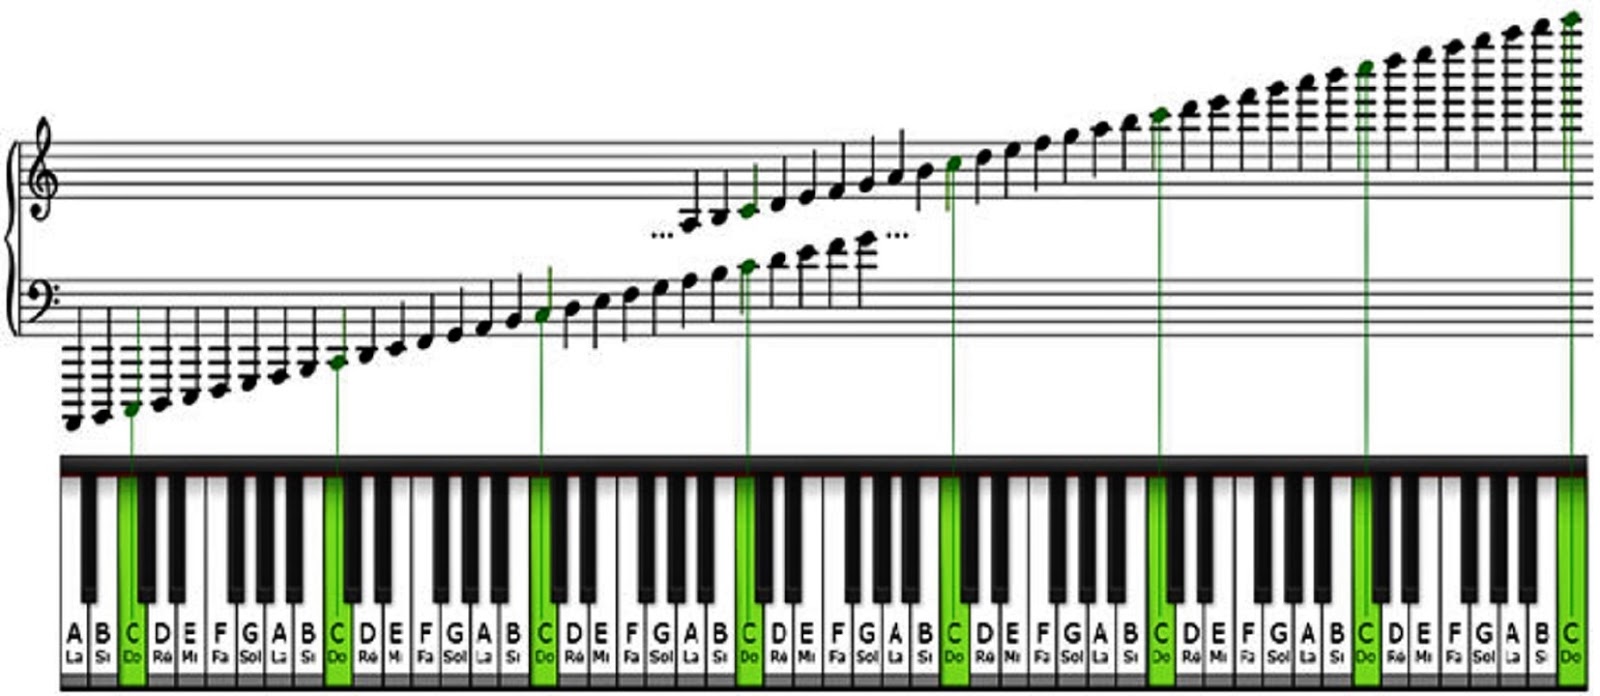 Где можно играть песни. Ноты на синтезаторе 61 клавиша. Диапазон фортепиано октавы. Расположение нот на клавишах синтезатора 61 клавиша. Расположение нот на синтезаторе 61 клавиша.